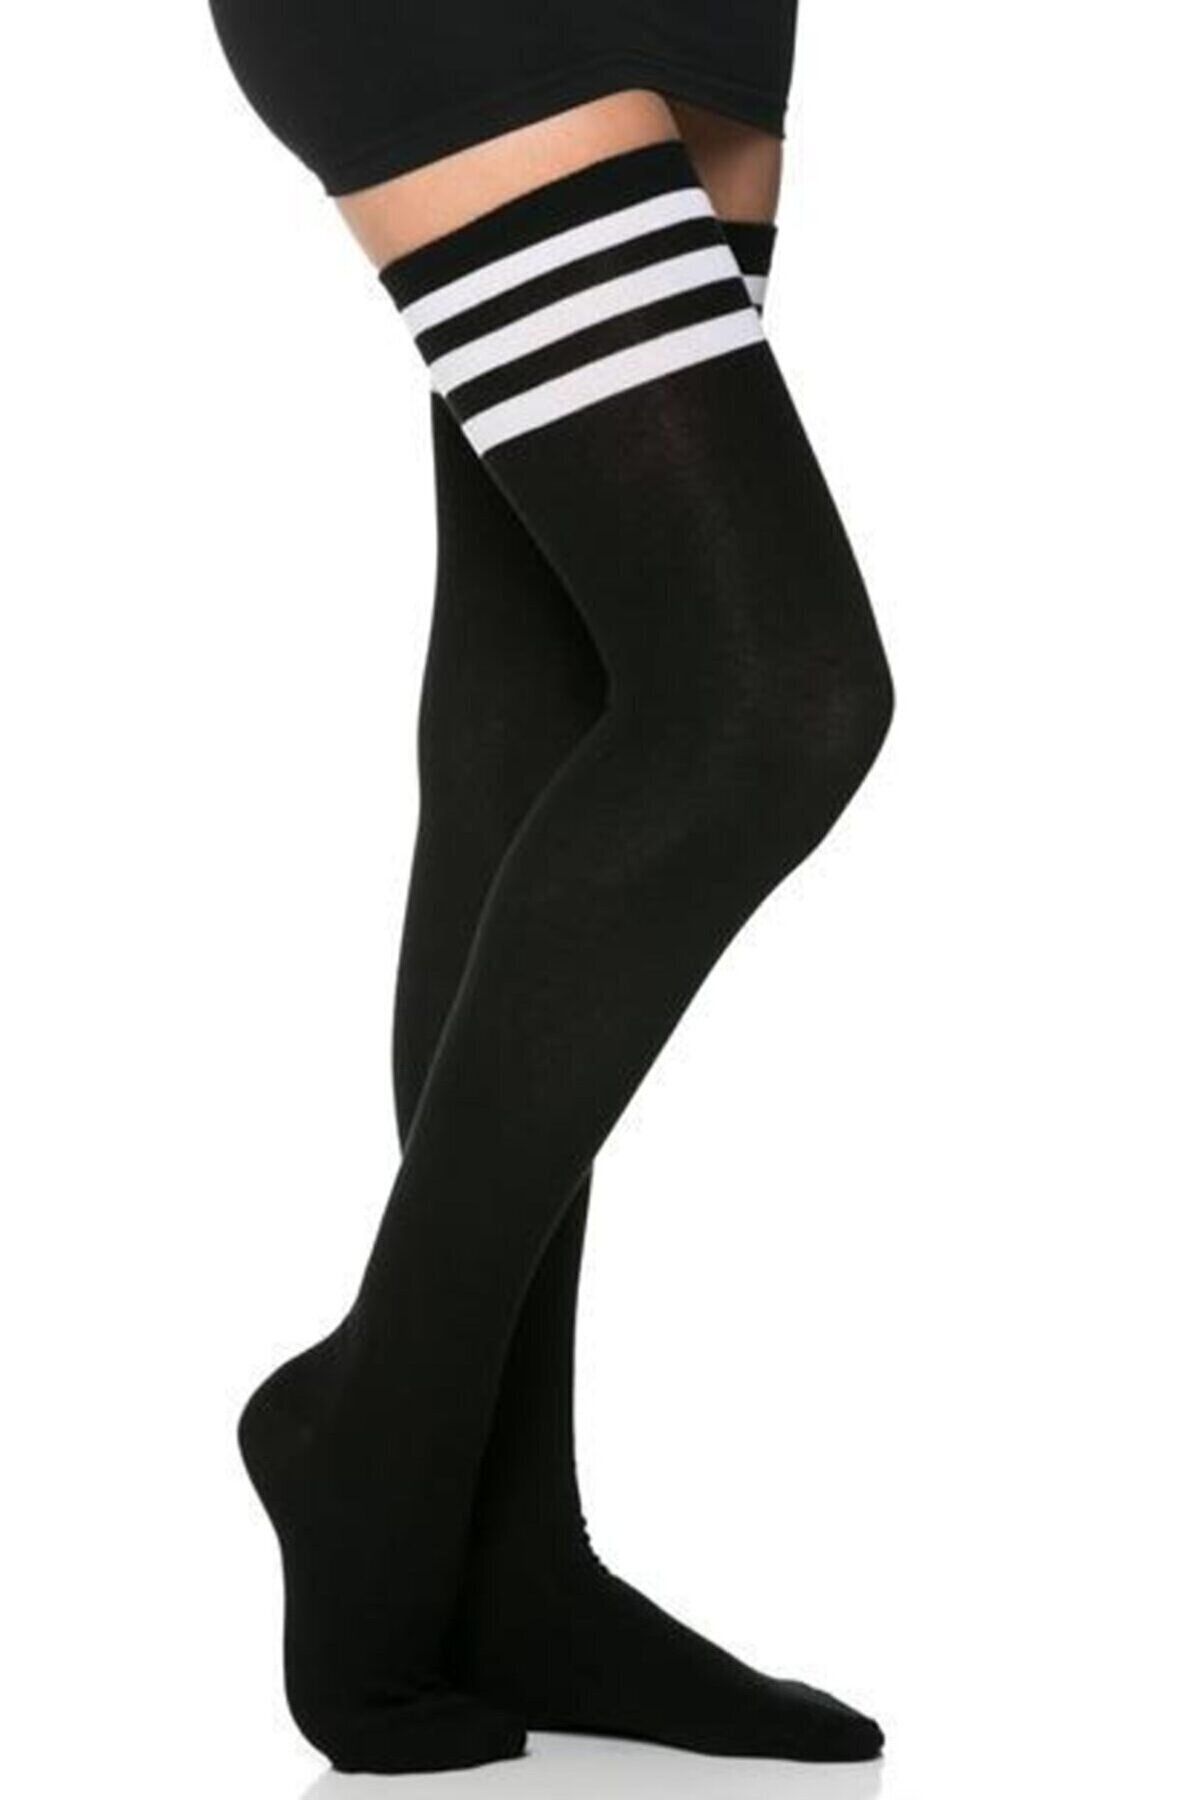 Design Socks Beyaz Üç Çizgili Pamuklu Diz Üstü Çorap Siyah - Desen Çorap